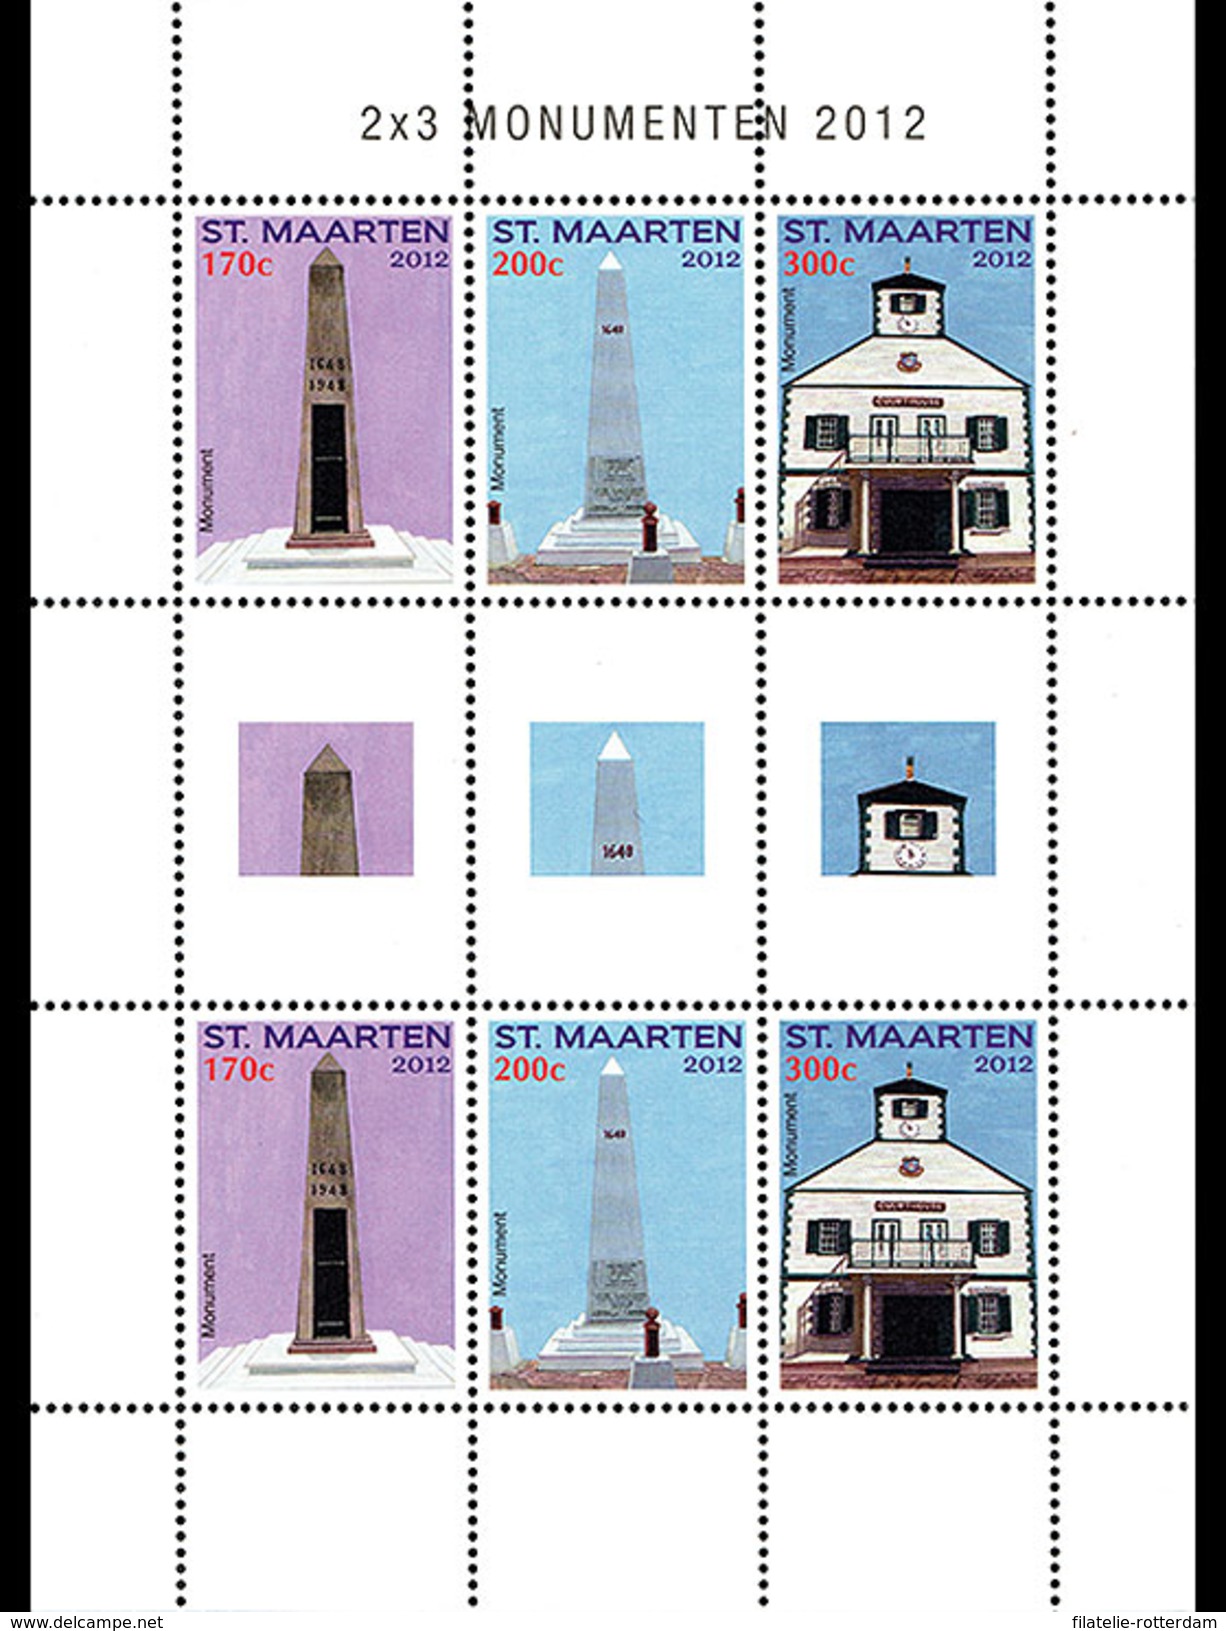 Sint Maarten / Dutch Caribbean - Postfris / MNH - Sheet Monumenten 2012 - Curaçao, Nederlandse Antillen, Aruba